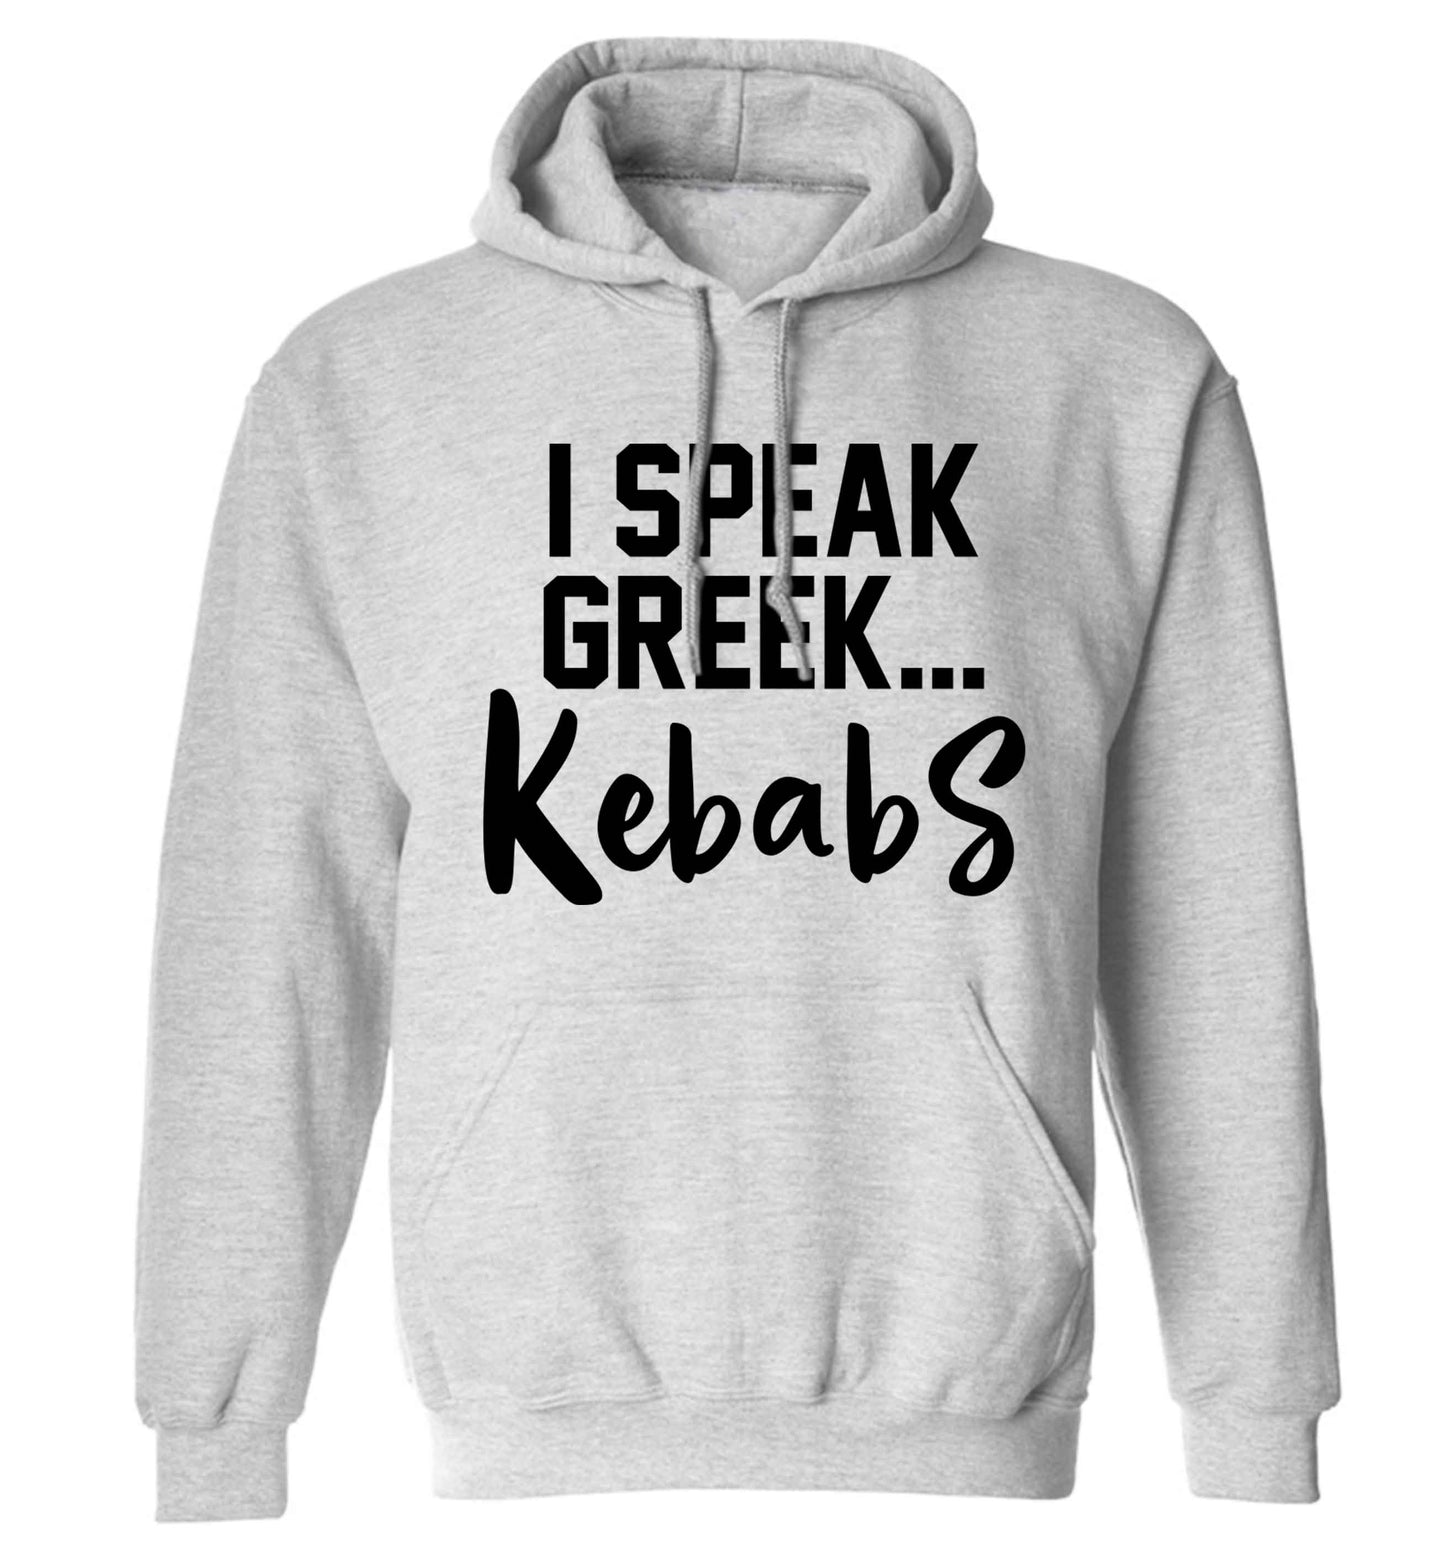 I speak Greek...kebabs adults unisex grey hoodie 2XL